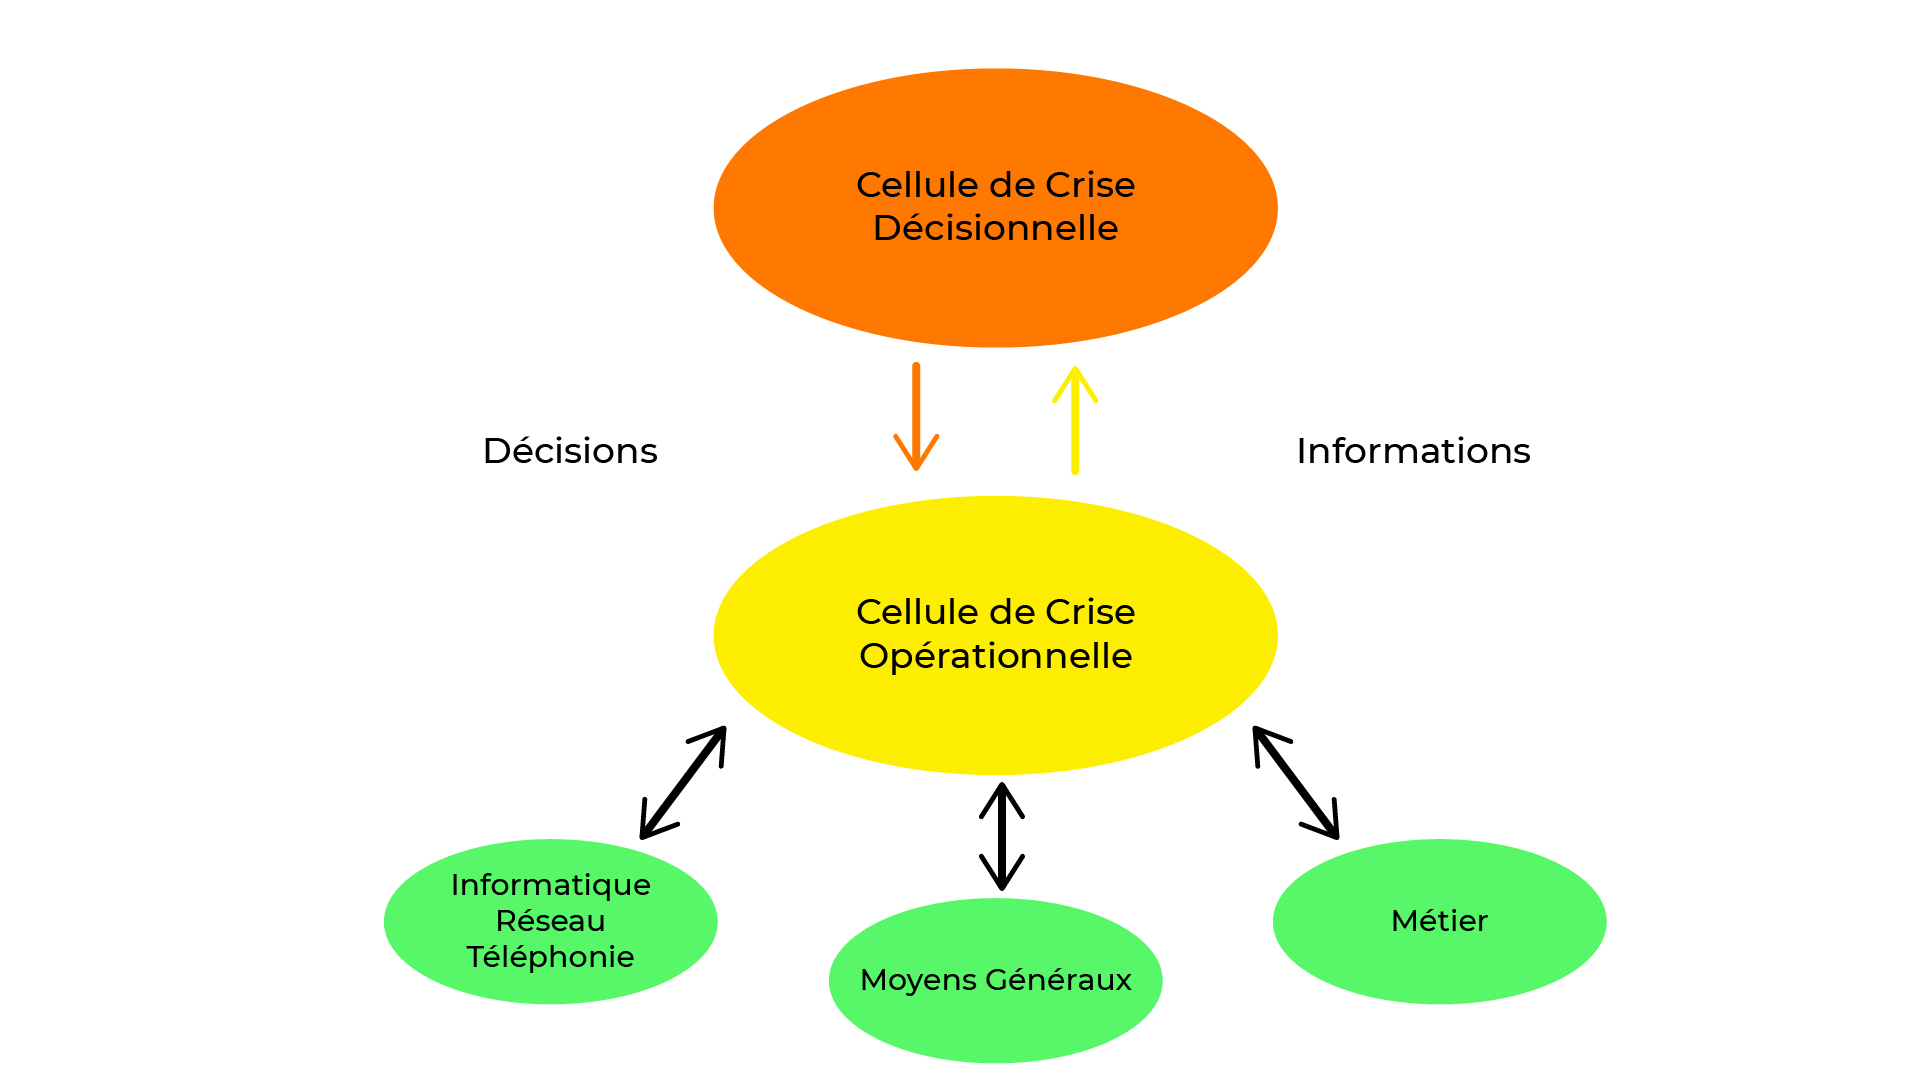 La cellule de crise décisionnelle partage informations et décisions avec la cellule de crise organisationnelle. Cette seconde cellule est en contact direct avec les métiers, l'informatique, et les moyens généraux.